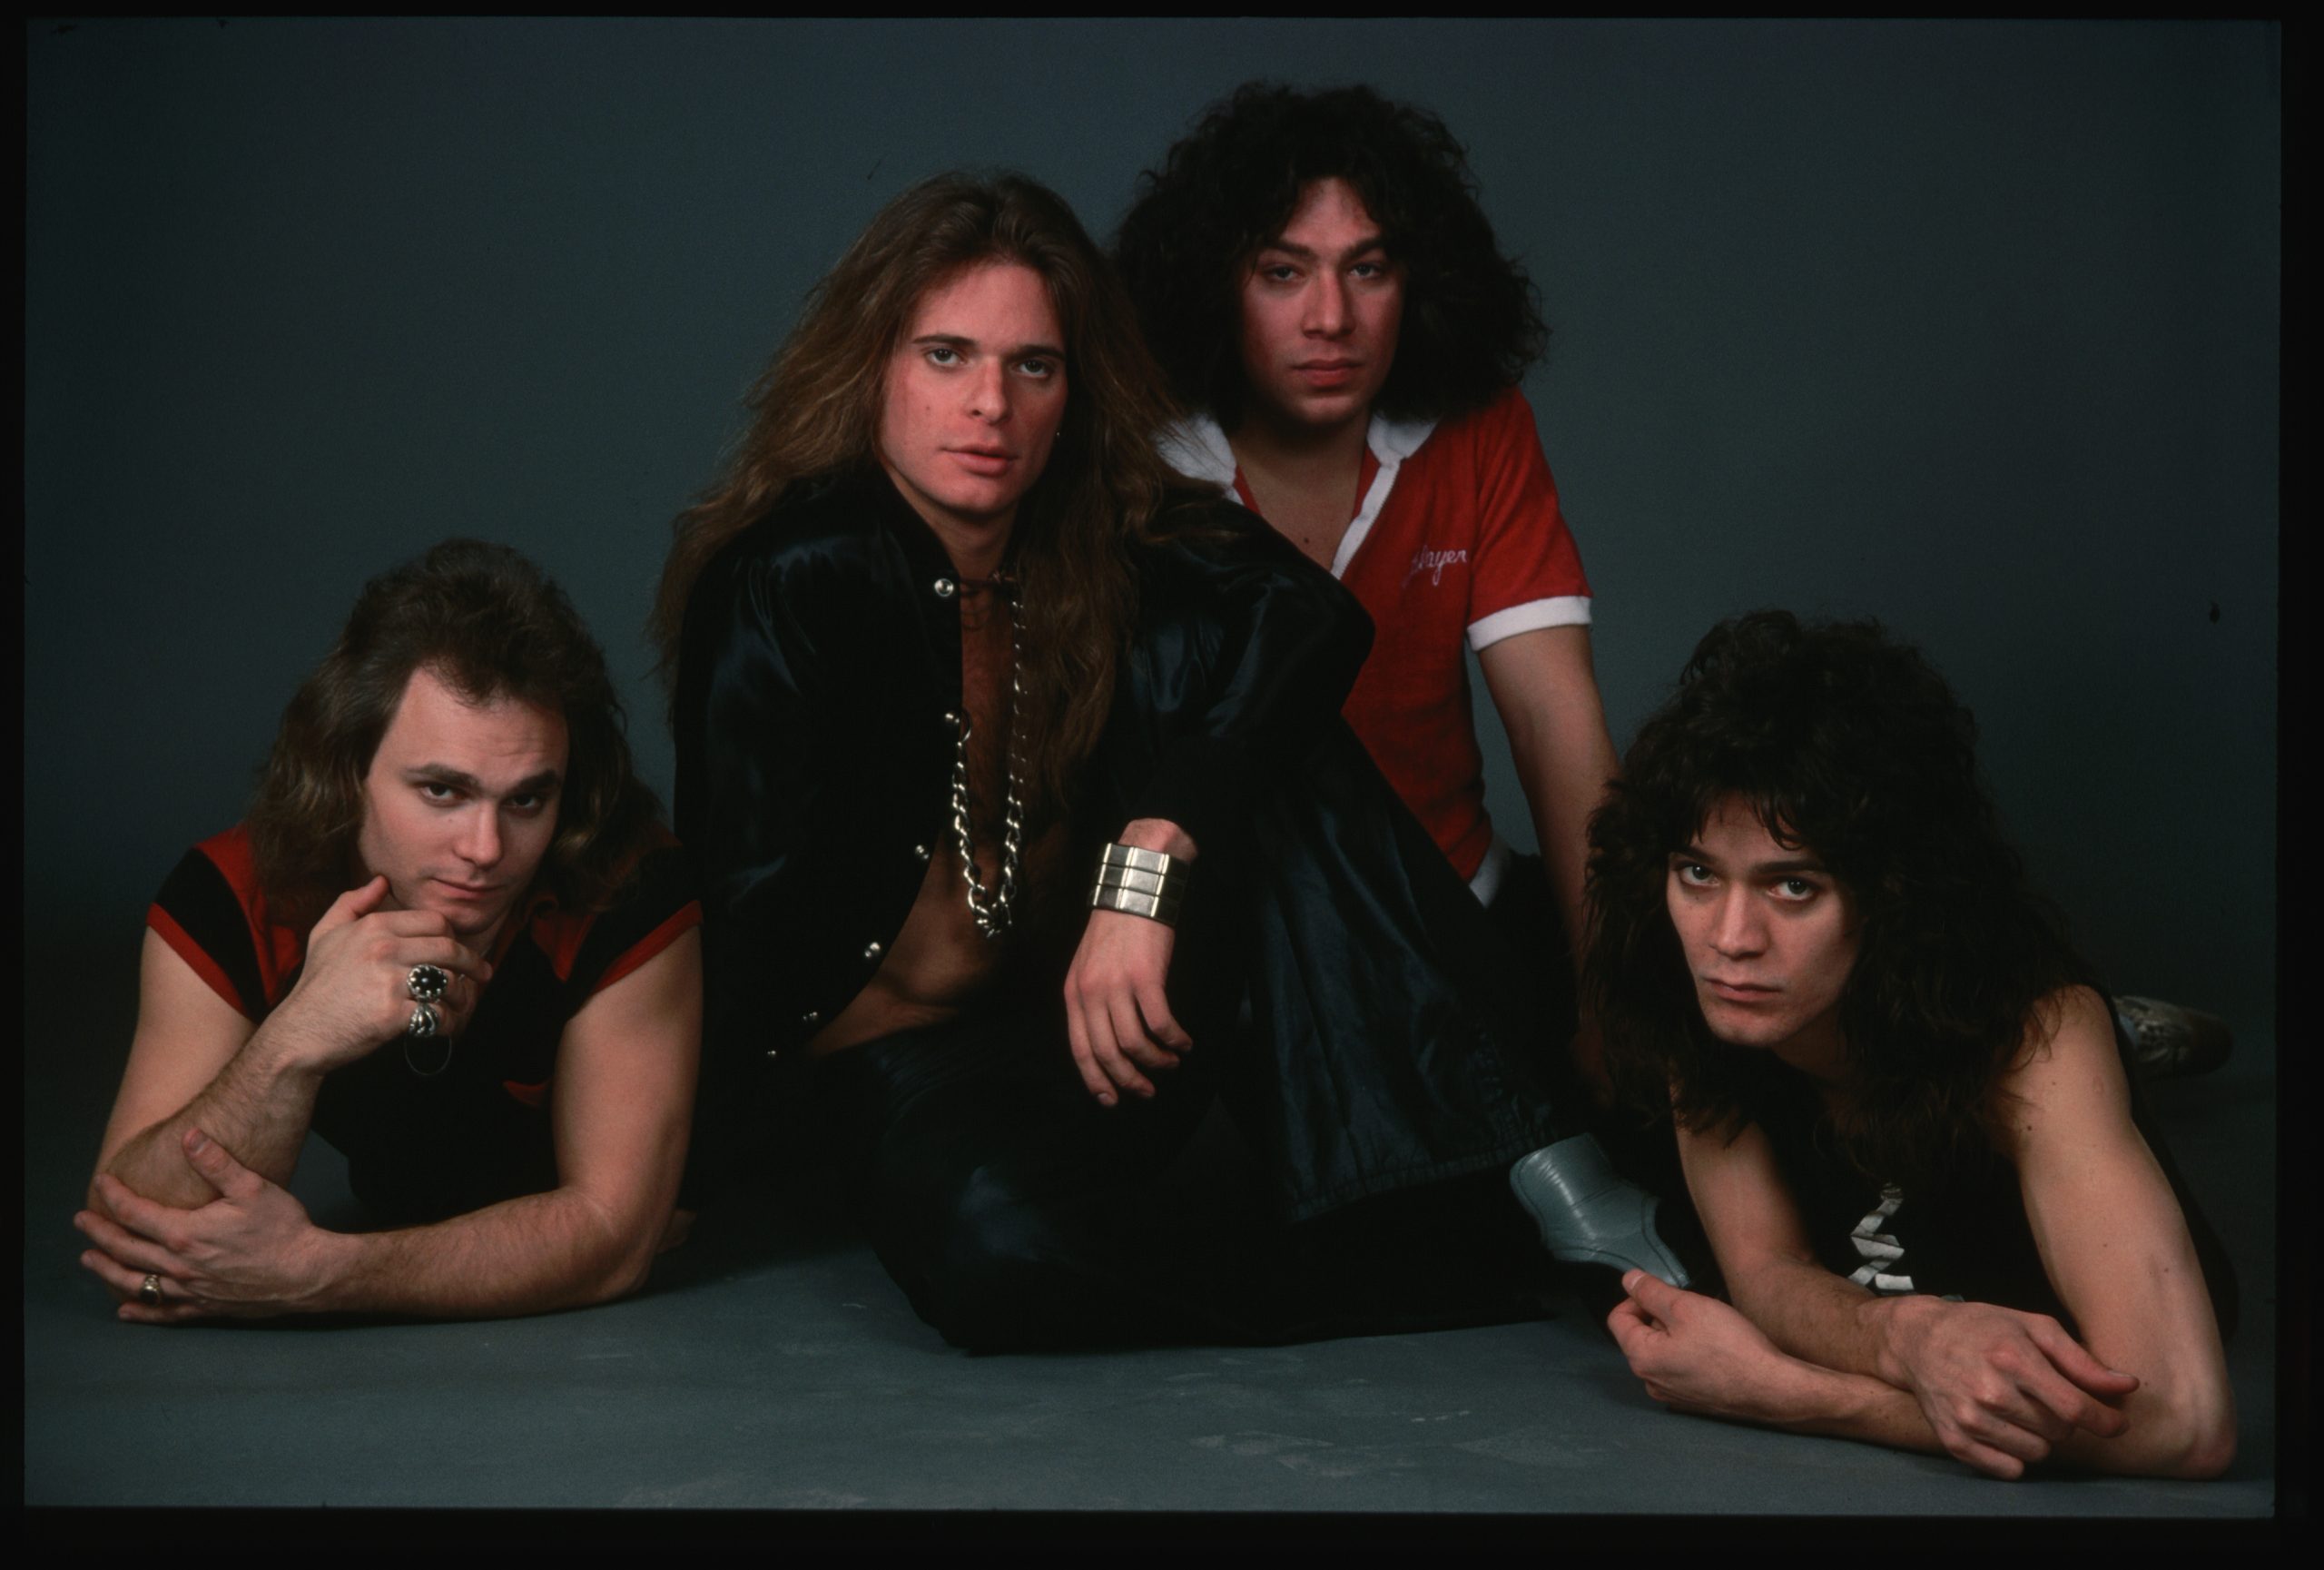 La extraña historia detrás de "Jump", la canción más popular de Van Halen